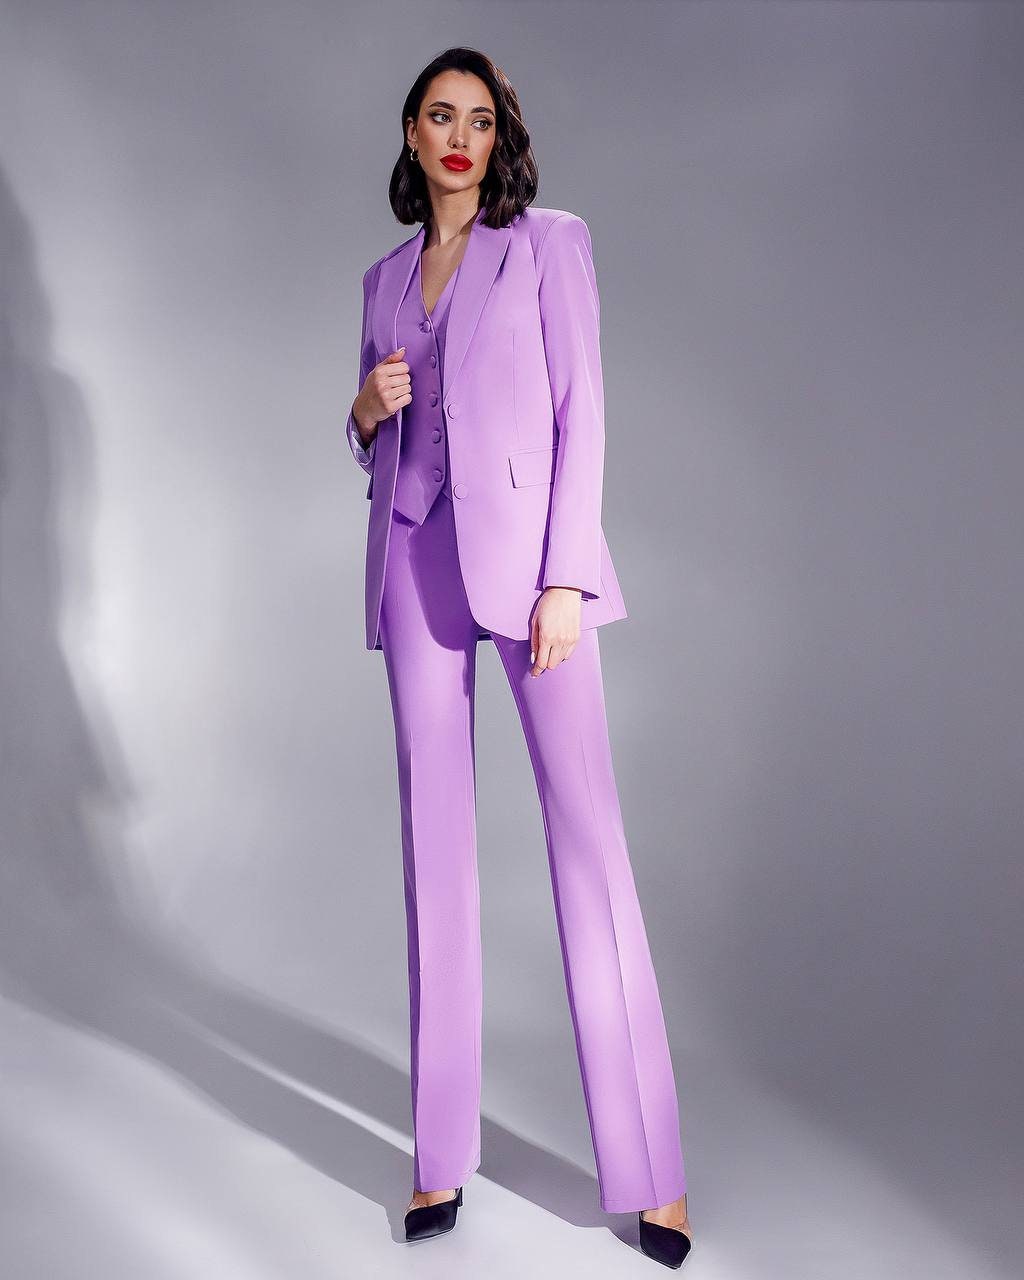 Lavender Formal Pantsuit for Women, Business Women Suit With Vest, Formal 3-piece  Suit Set Womens, Womens Office Wear Blazer Trouser Suit -  Canada